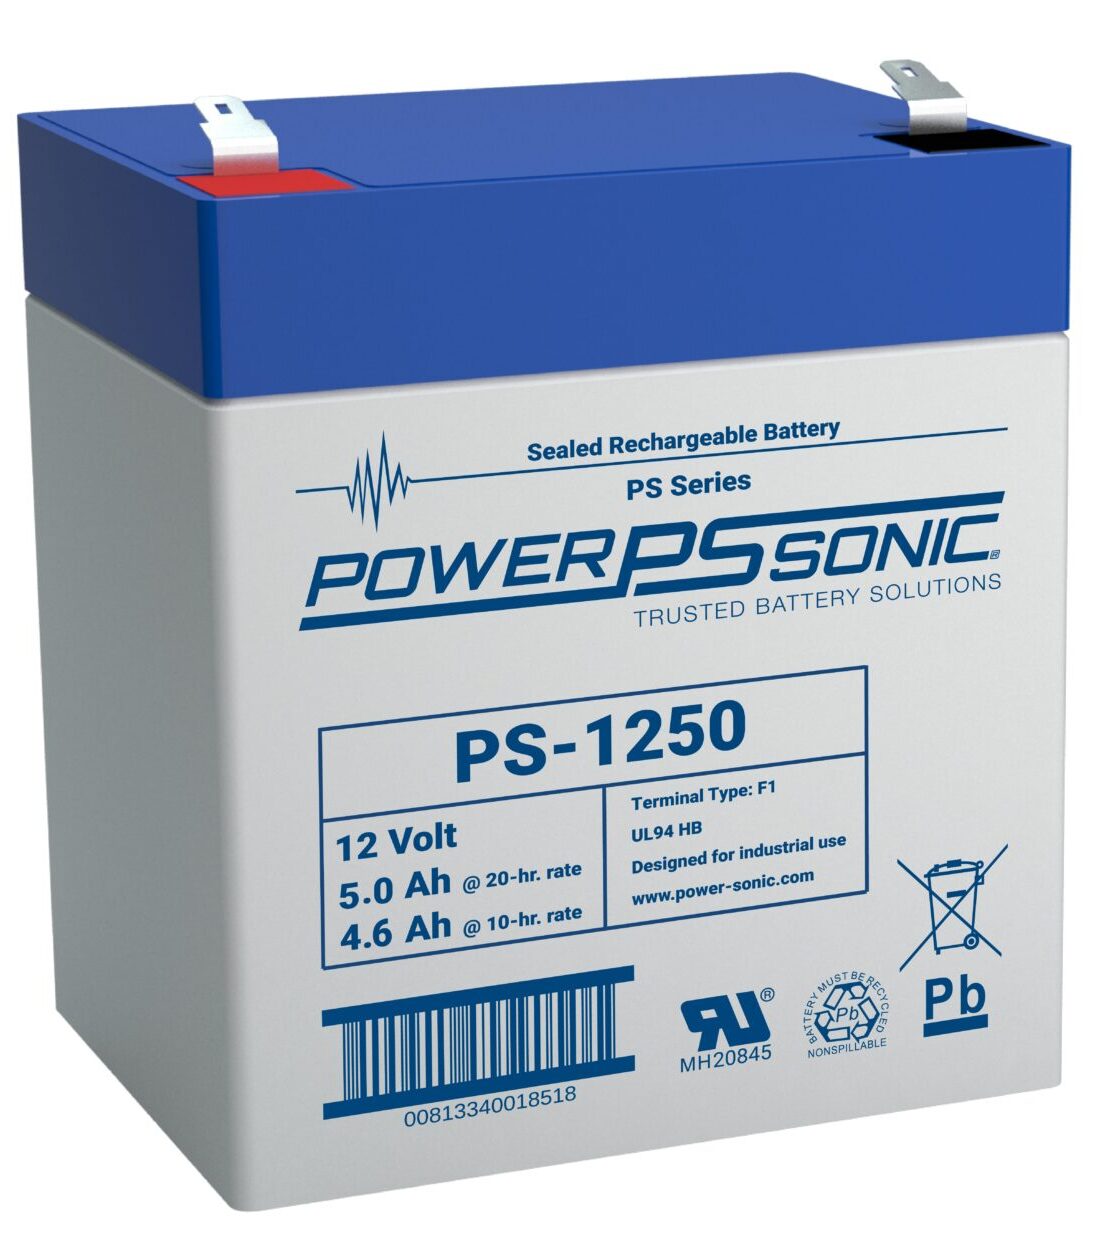 12V 5Ah F1 Battery for Power Sonic PS1242 OPTION